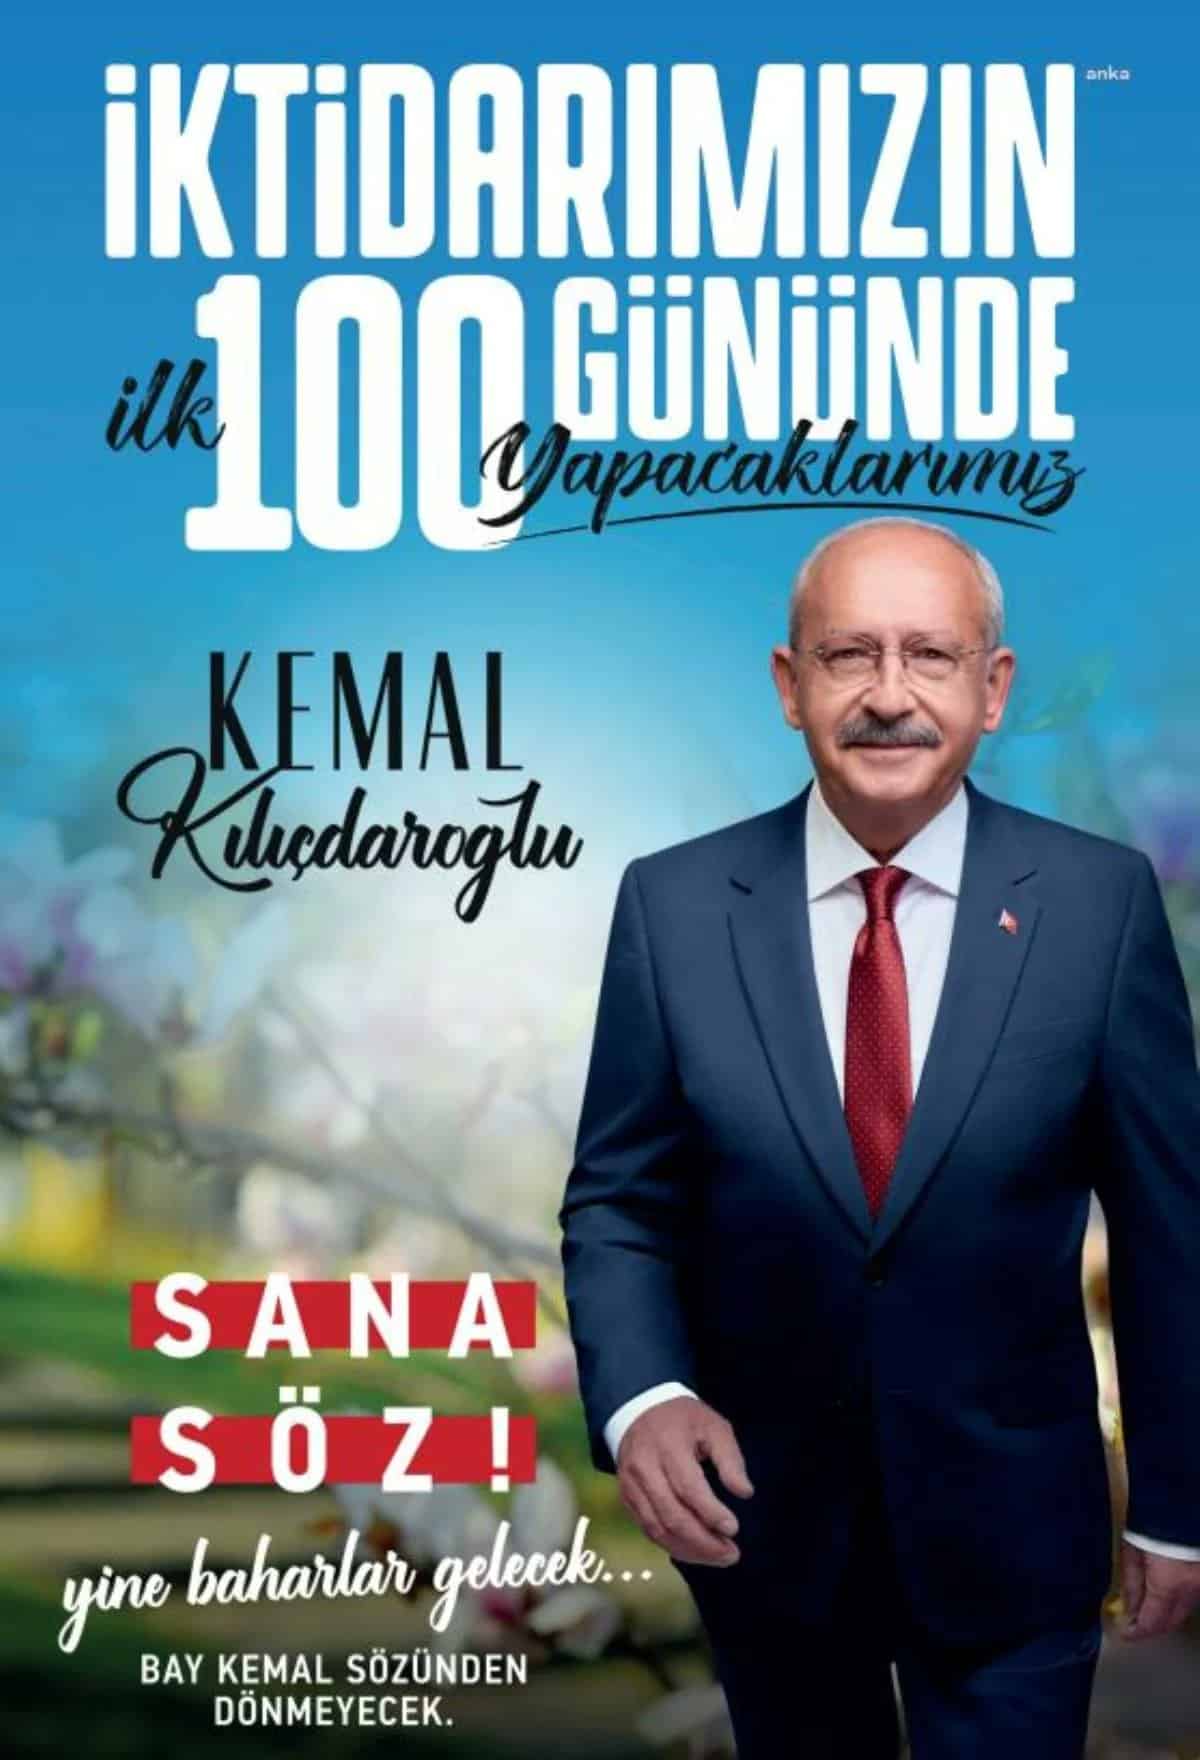 Kılıçdaroğlu ilk 100 gün